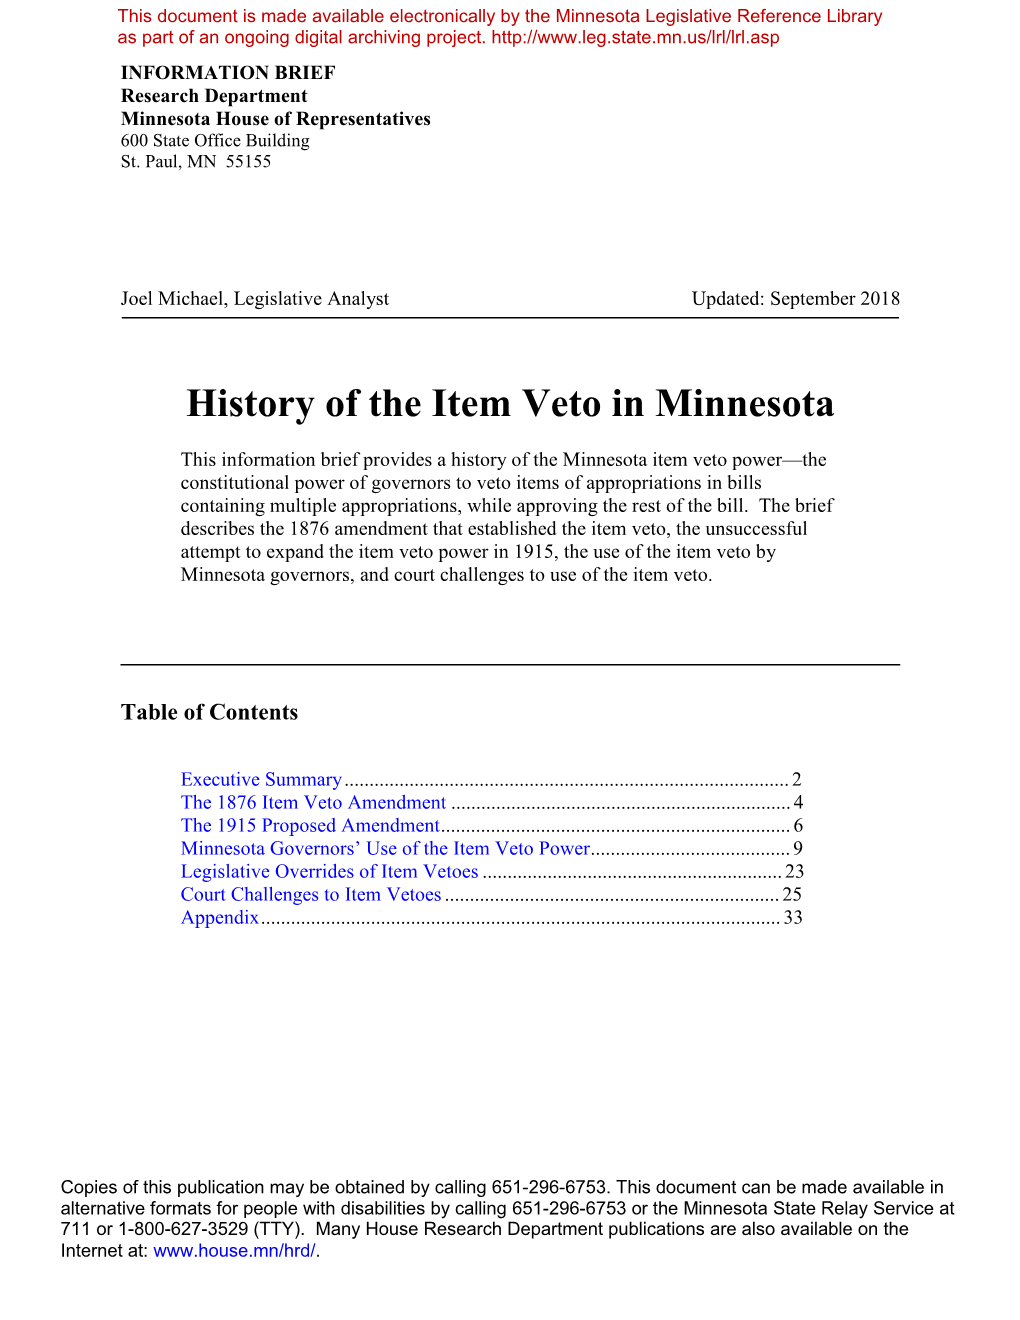 History of the Item Veto in Minnesota